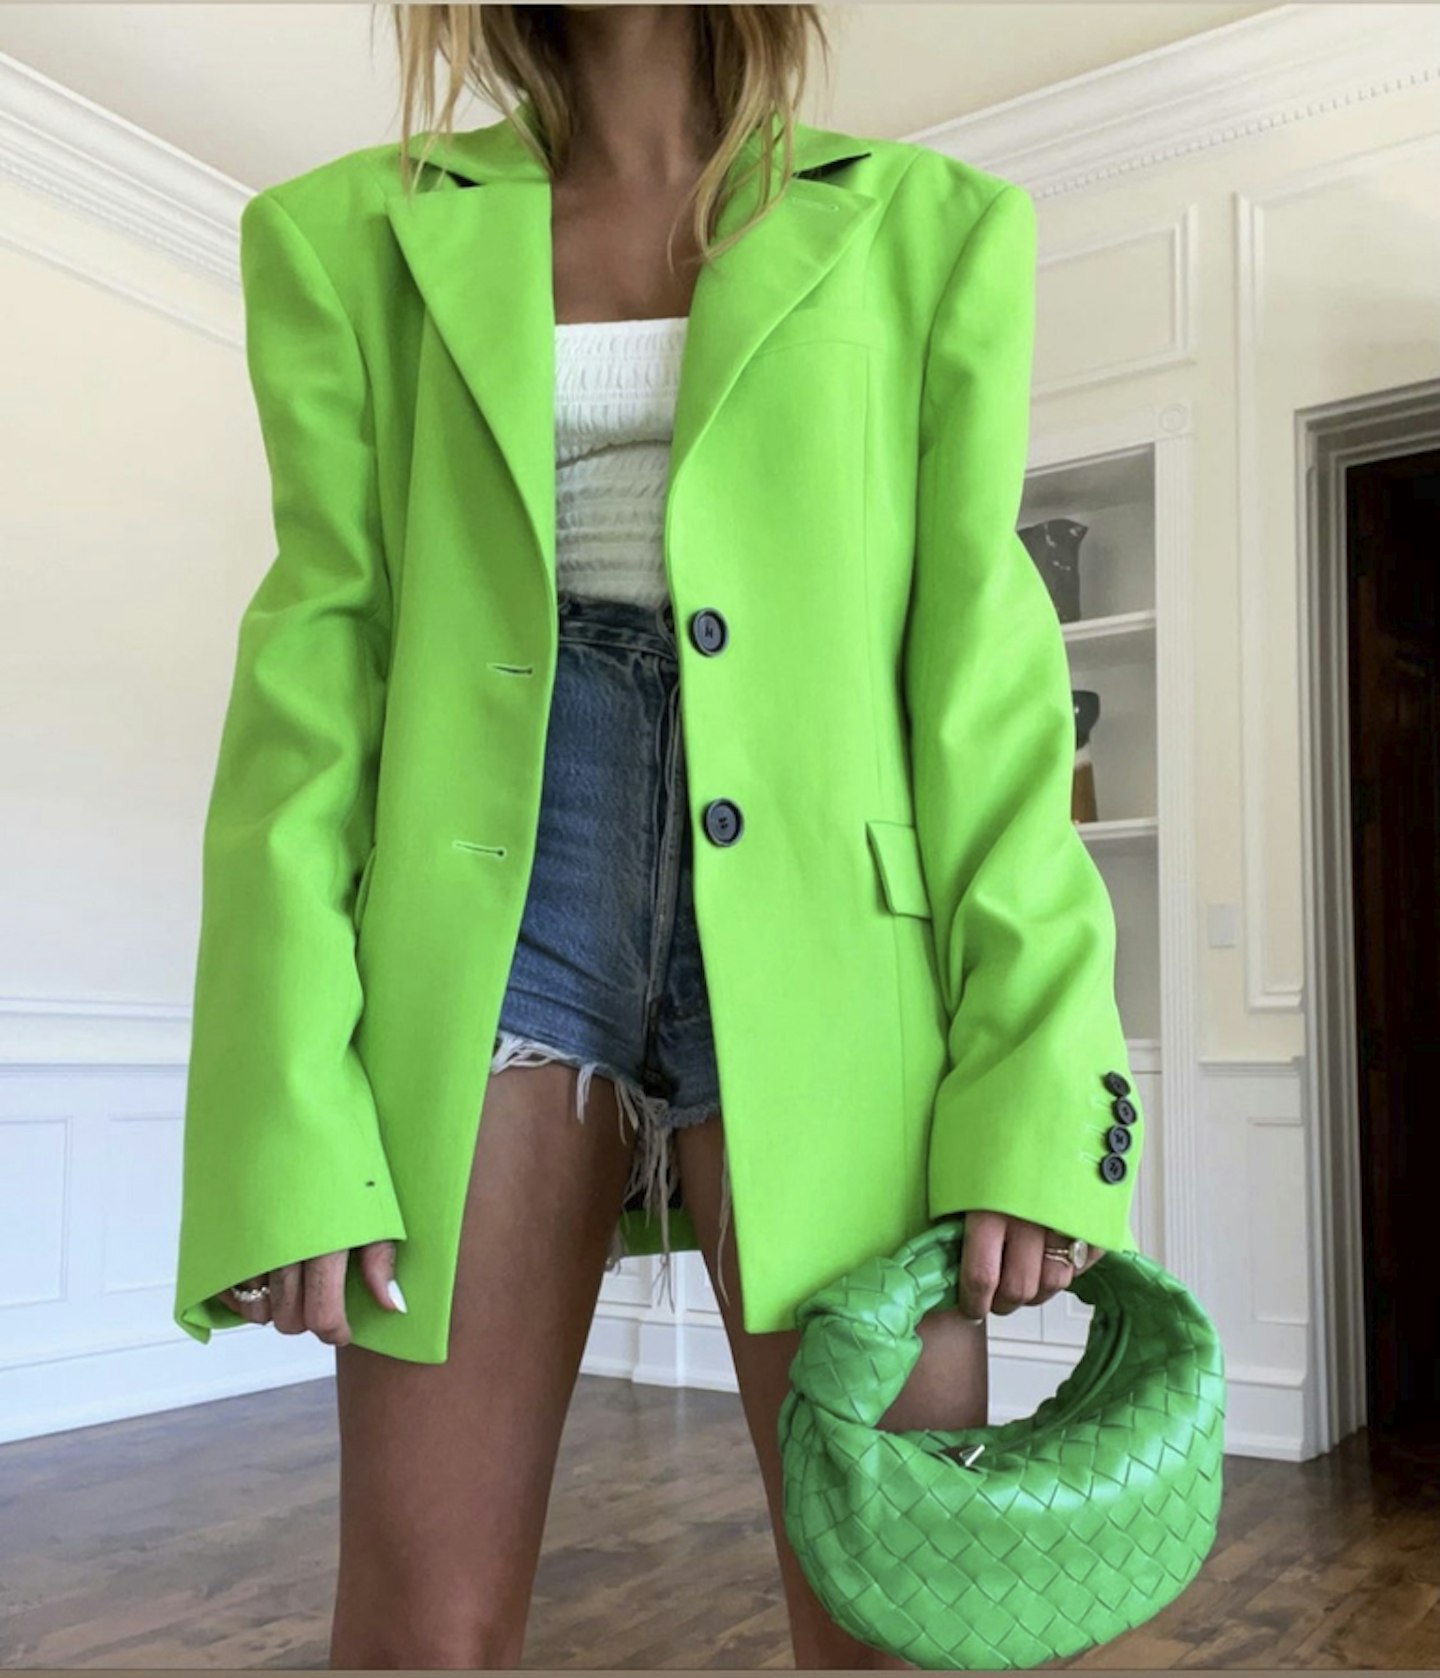 hailey bieber wearing green blazer denim shorts 